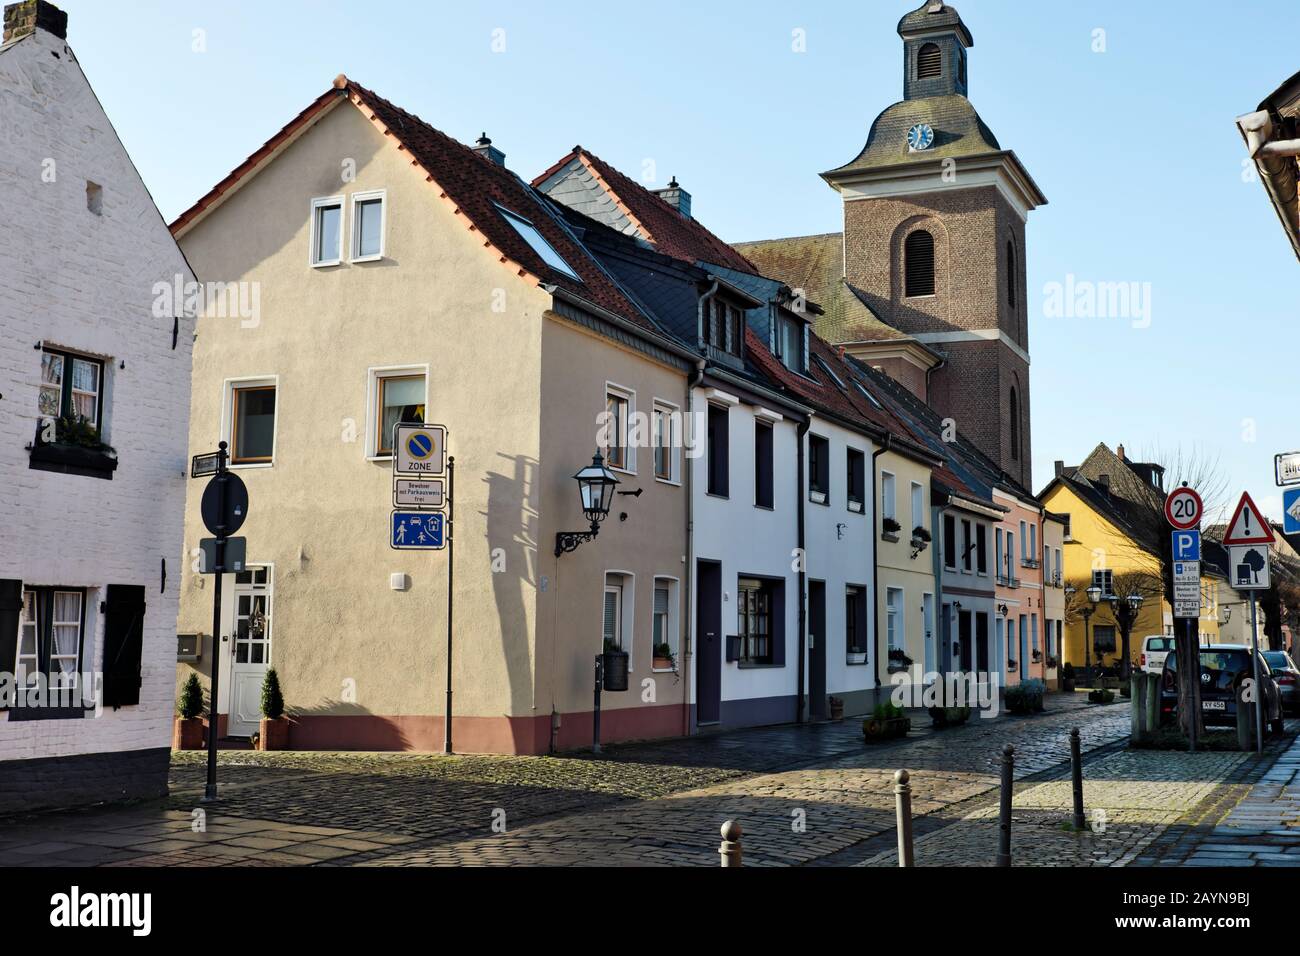 Scène de rue dans la vieille ville historique de Krefeld-Linn, NRW Allemagne. Banque D'Images